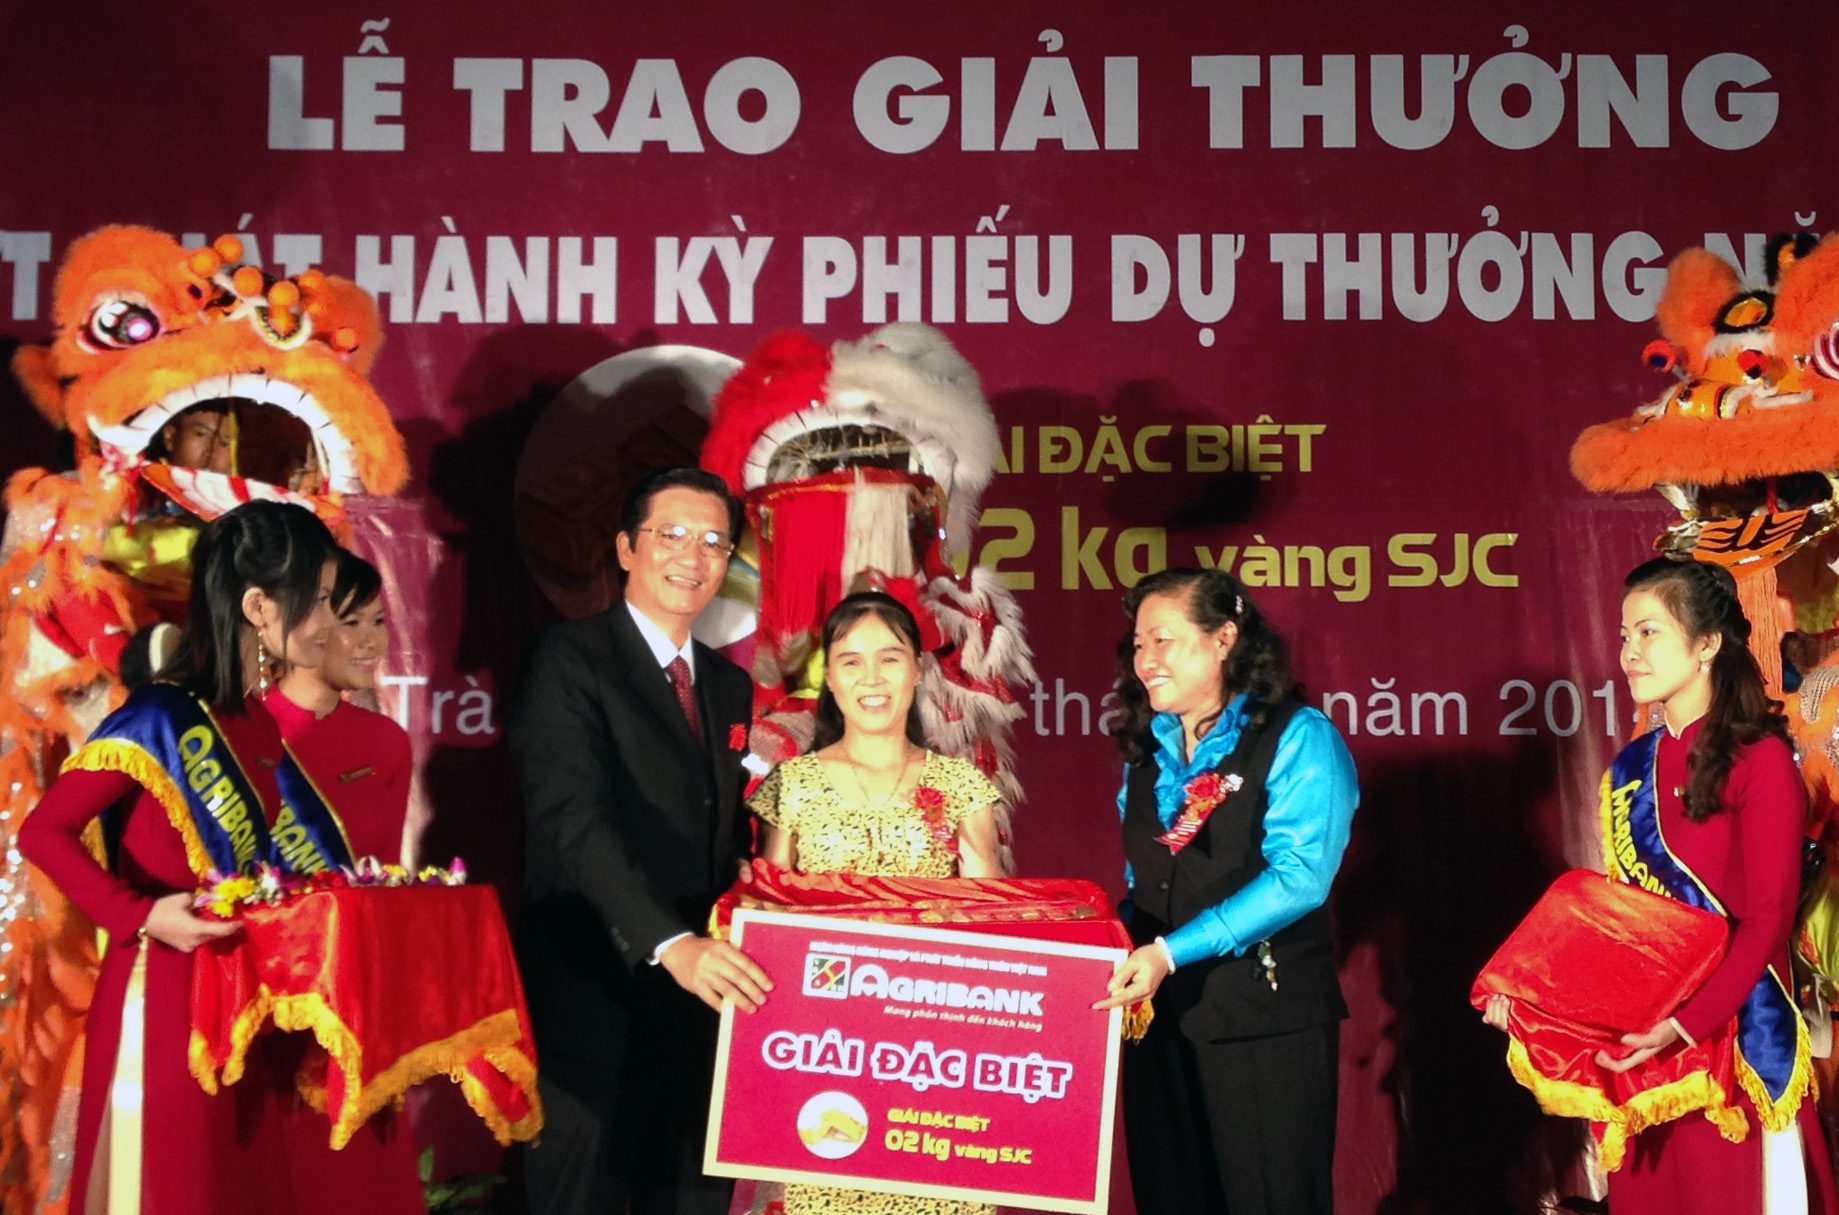 Ông Trần Ngọc Hải - Phó Trưởng Văn phòng đại diện khu vực miền Nam Agribank và bà Bùi Thị Sáu - GĐ Ngân hàng Nhà nước tỉnh Trà Vinh trao giải đặc biệt 2kg vàng SJC cho khách hàng.